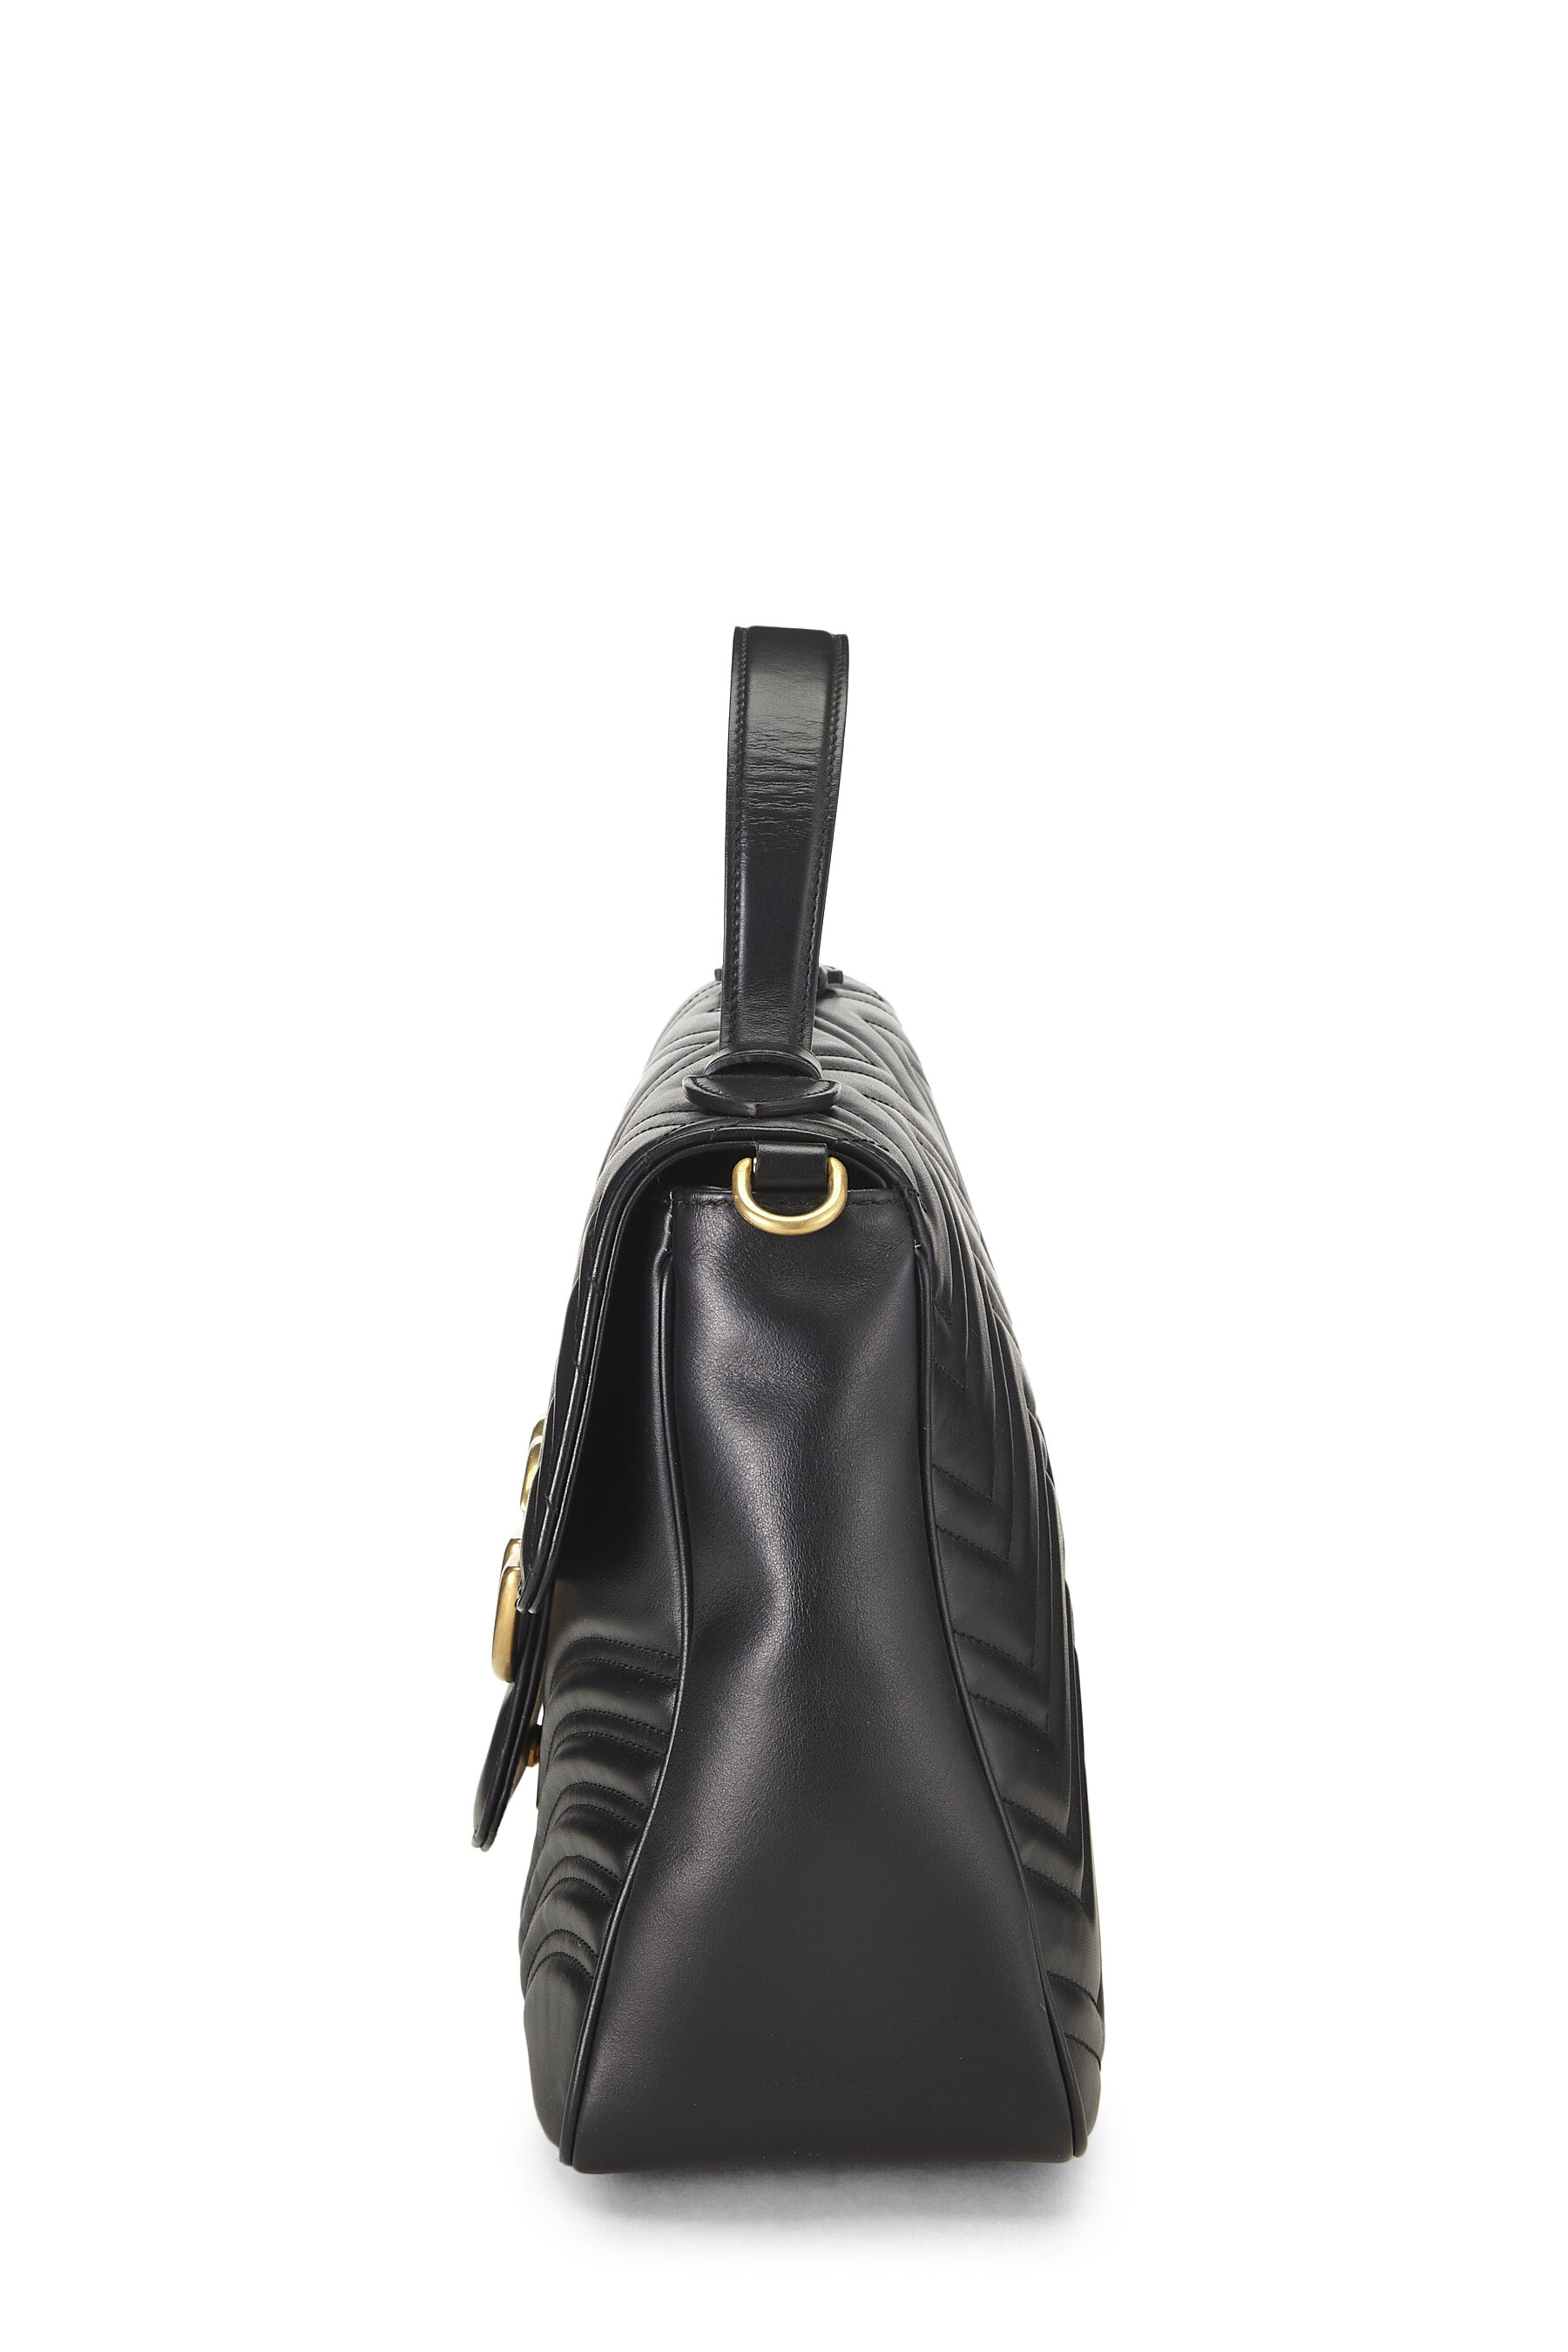 Black Leather GG Marmont Top Handle Shoulder Bag Medium